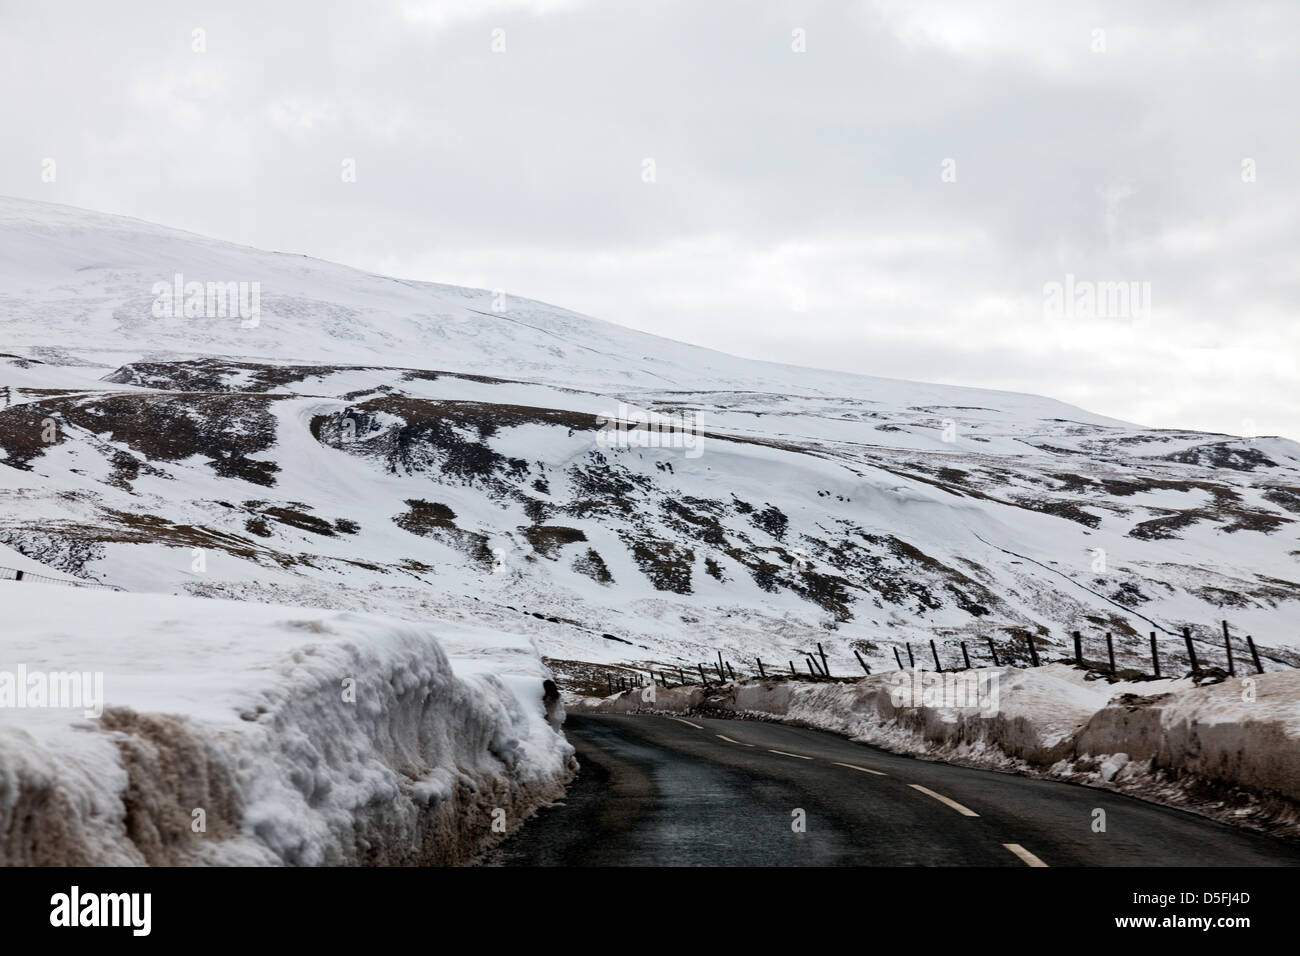 Le Yorkshire, UK. 1er avril 2013. La neige et les glaçons qui dominent toujours le paysage des Yorkshire Dales. Les routes sont encore peu praticable dans les lieux en raison de la neige est poussée jusqu'à un côté qui commence à se détacher et tomber dans le road Crédit : Paul Thompson/Alamy Live News Banque D'Images